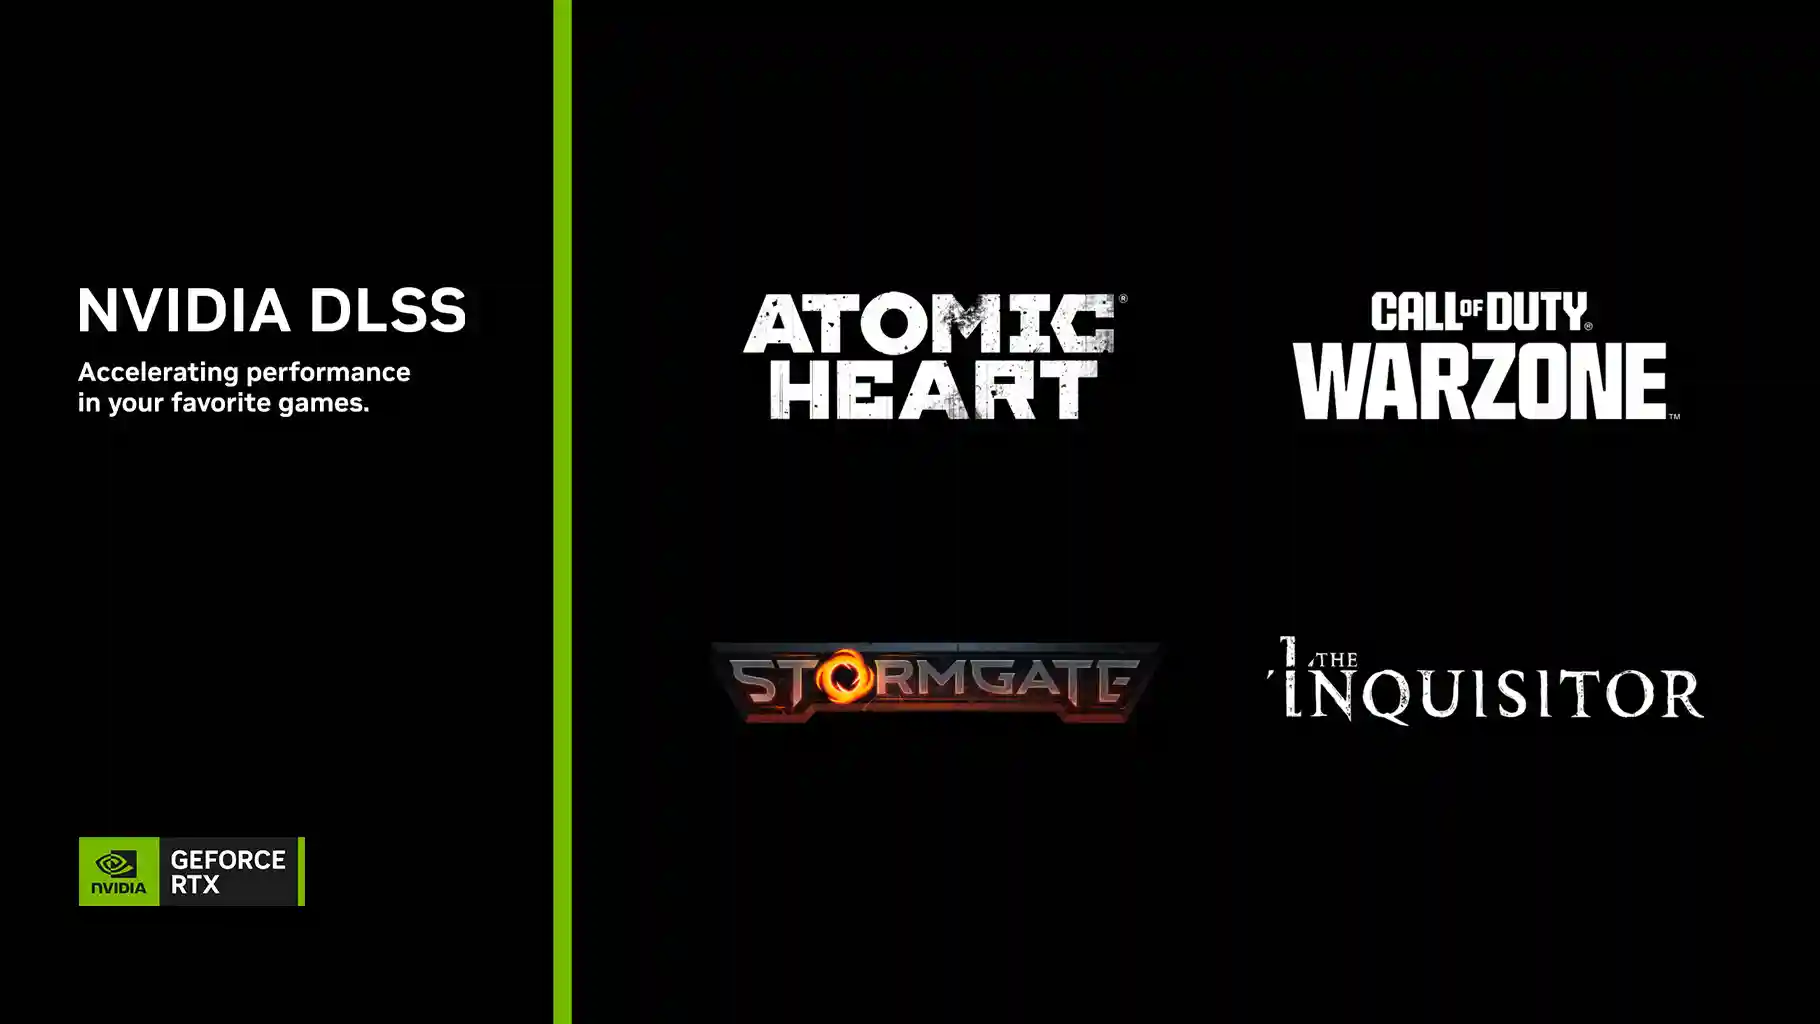 Stormgate, Call of Duty: Warzone - stagione 2, Atomic Heart: Trapped in Limbo e altri giochi ricevono il supporto al DLSS